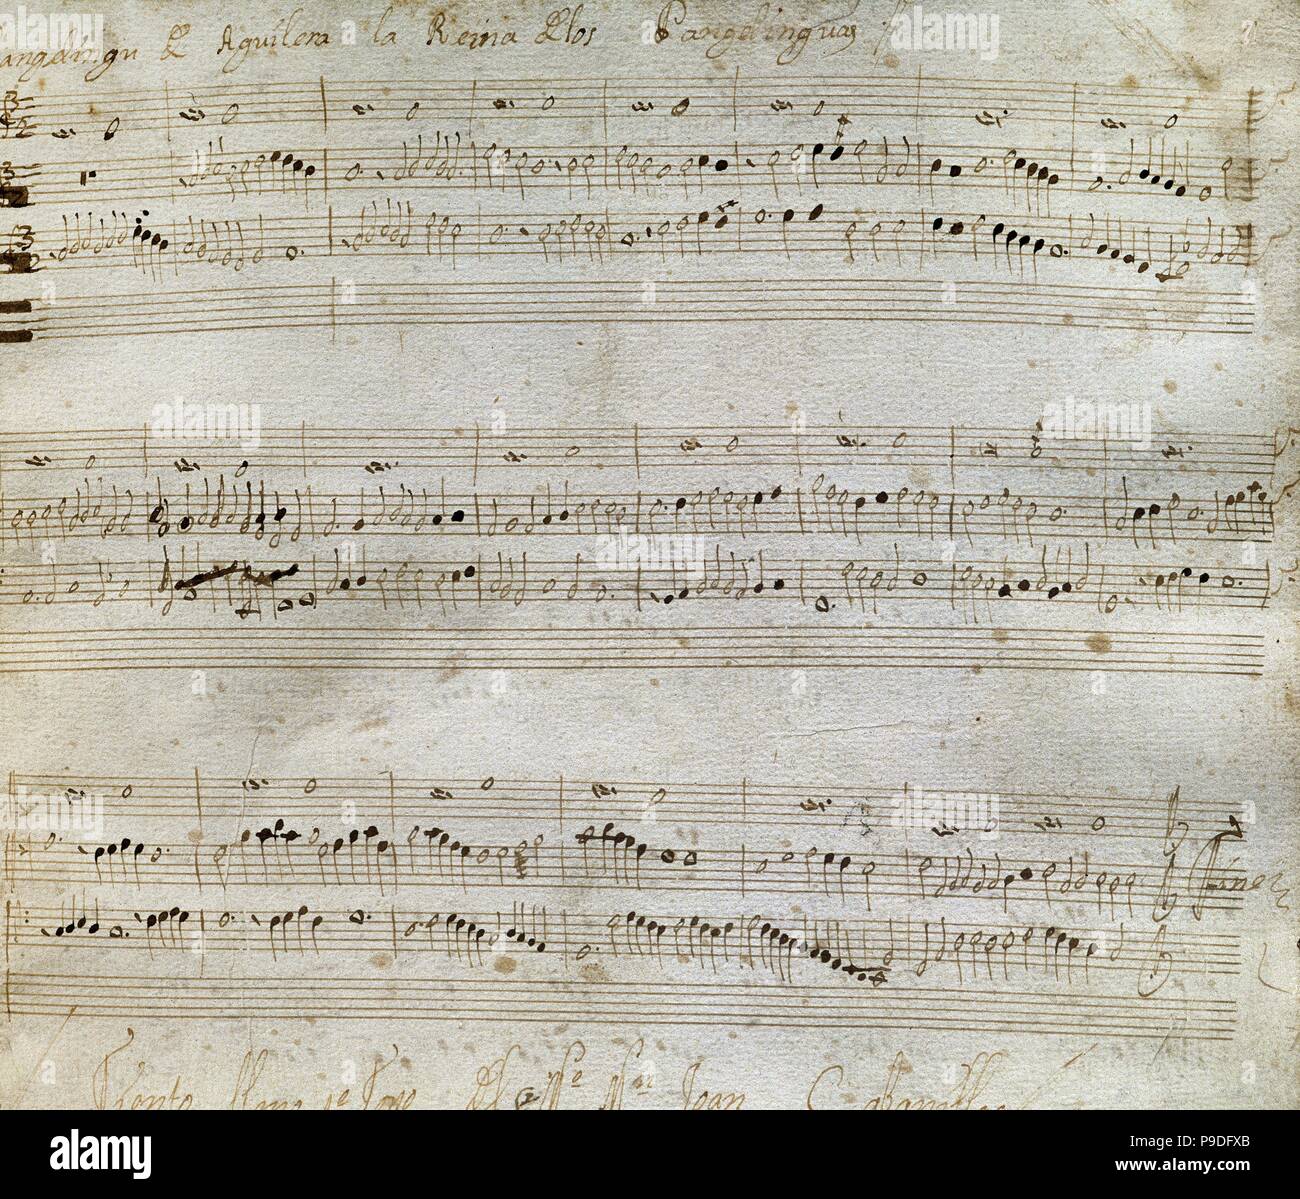 Juan Cabanilles (1644-1712). Lo spagnolo compositore organista. Manoscritto di Tiento piena di primo tono (Tiento Lleno de primer tono). Biblioteca di Catalogna. Barcellona, in Catalogna, Spagna. Foto Stock